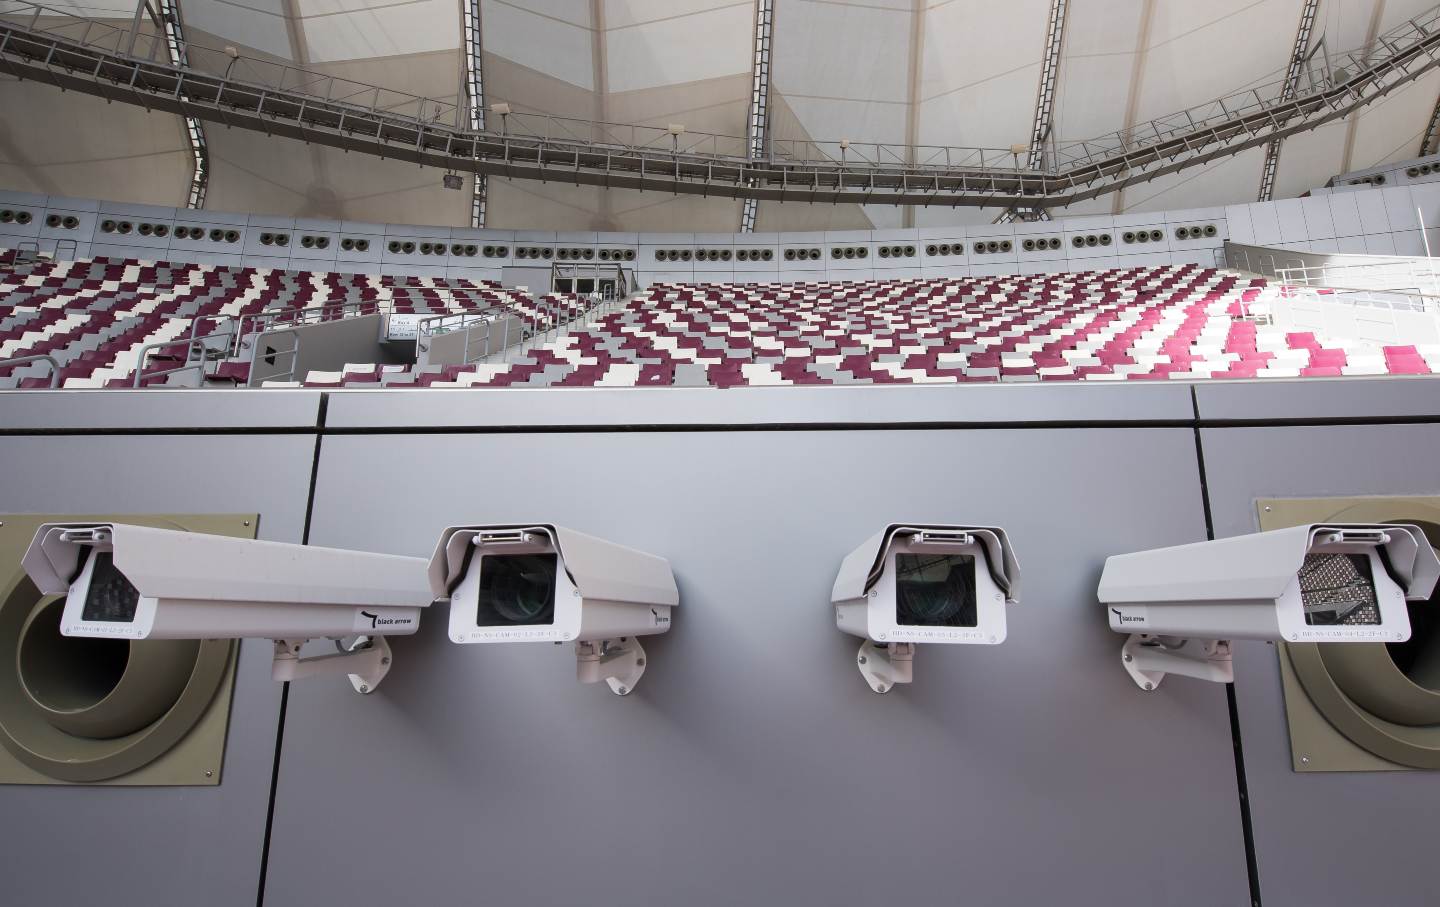 Four surveillance cameras hang inside a stadium.